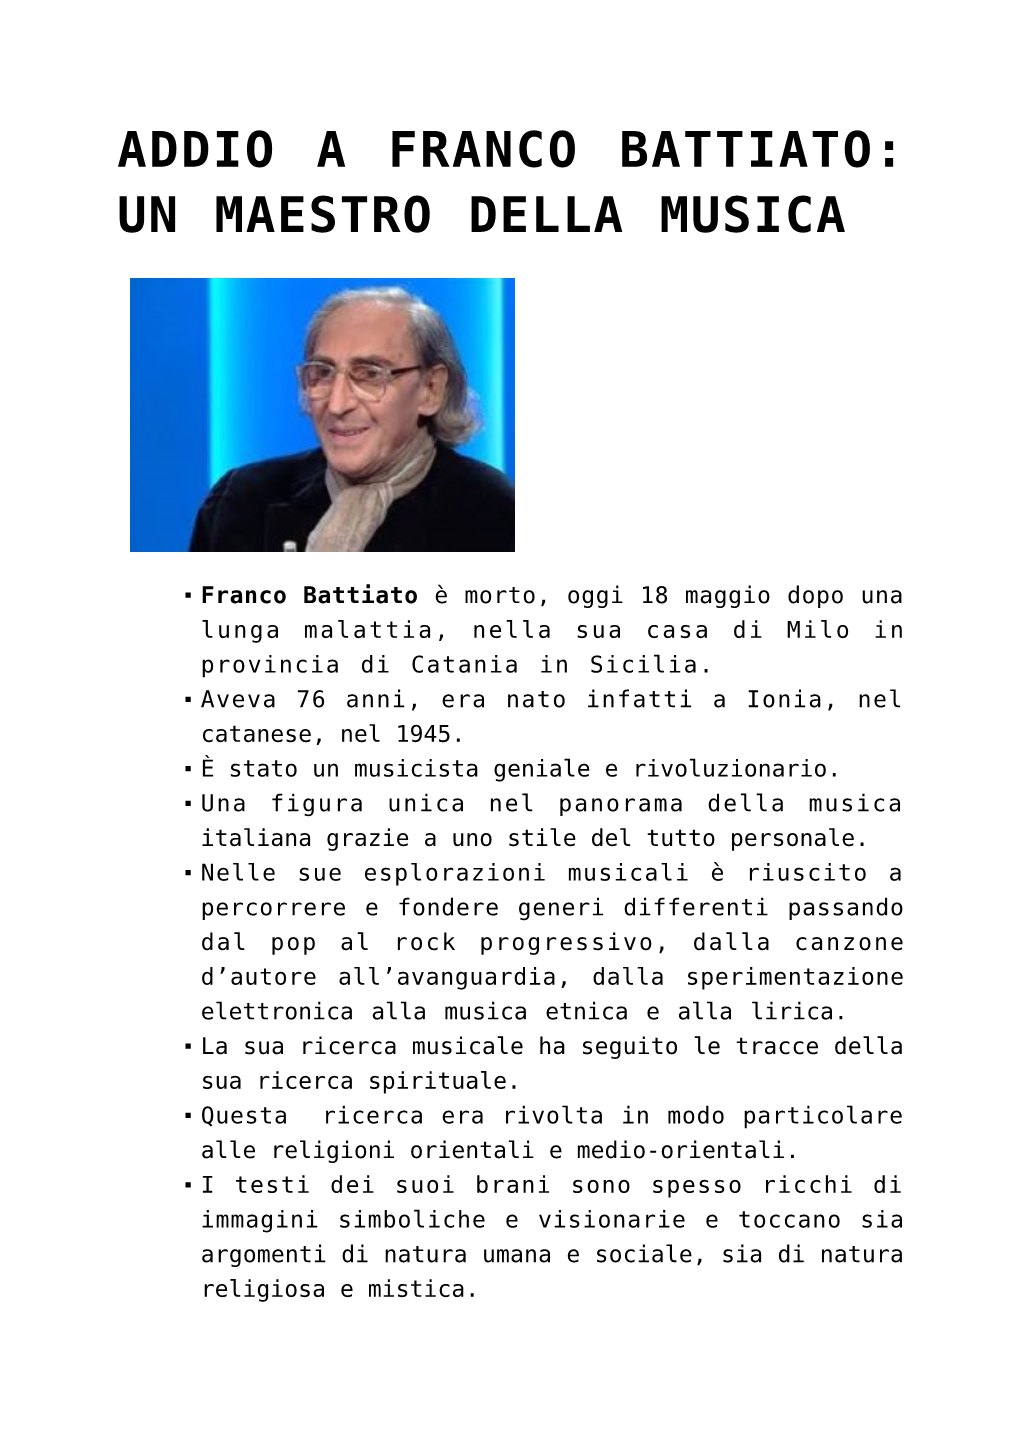 Addio a Franco Battiato: Un Maestro Della Musica